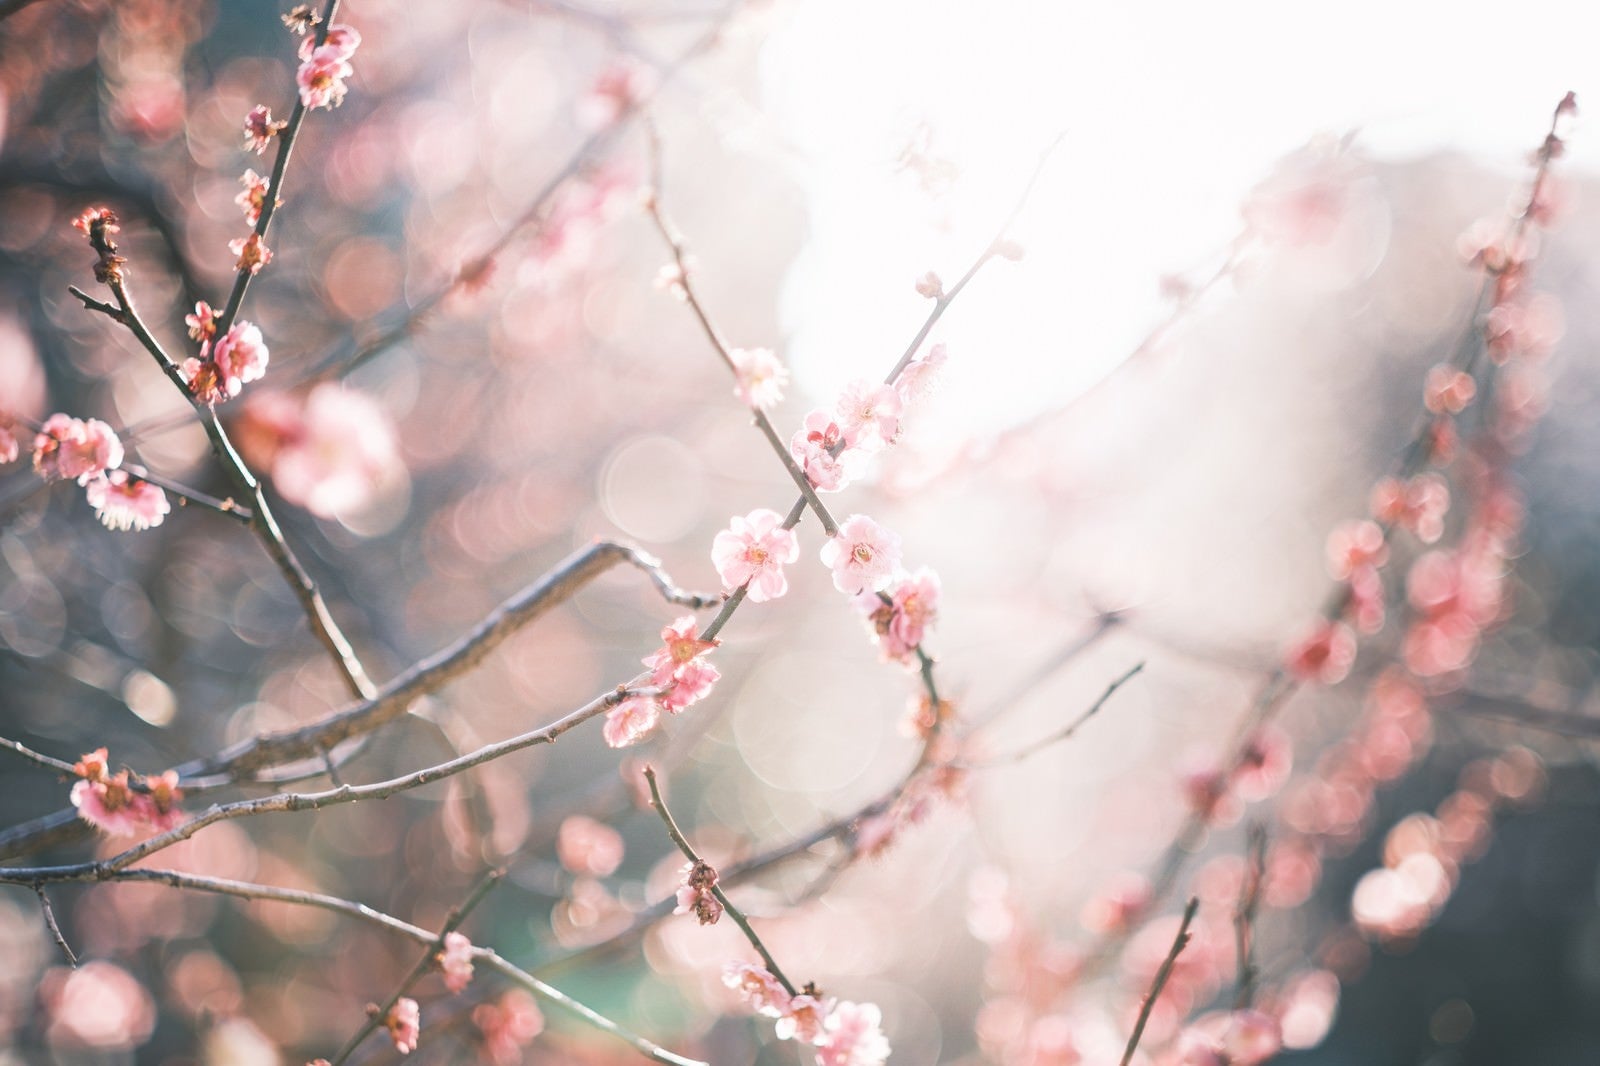 「逆光の梅の花」の写真